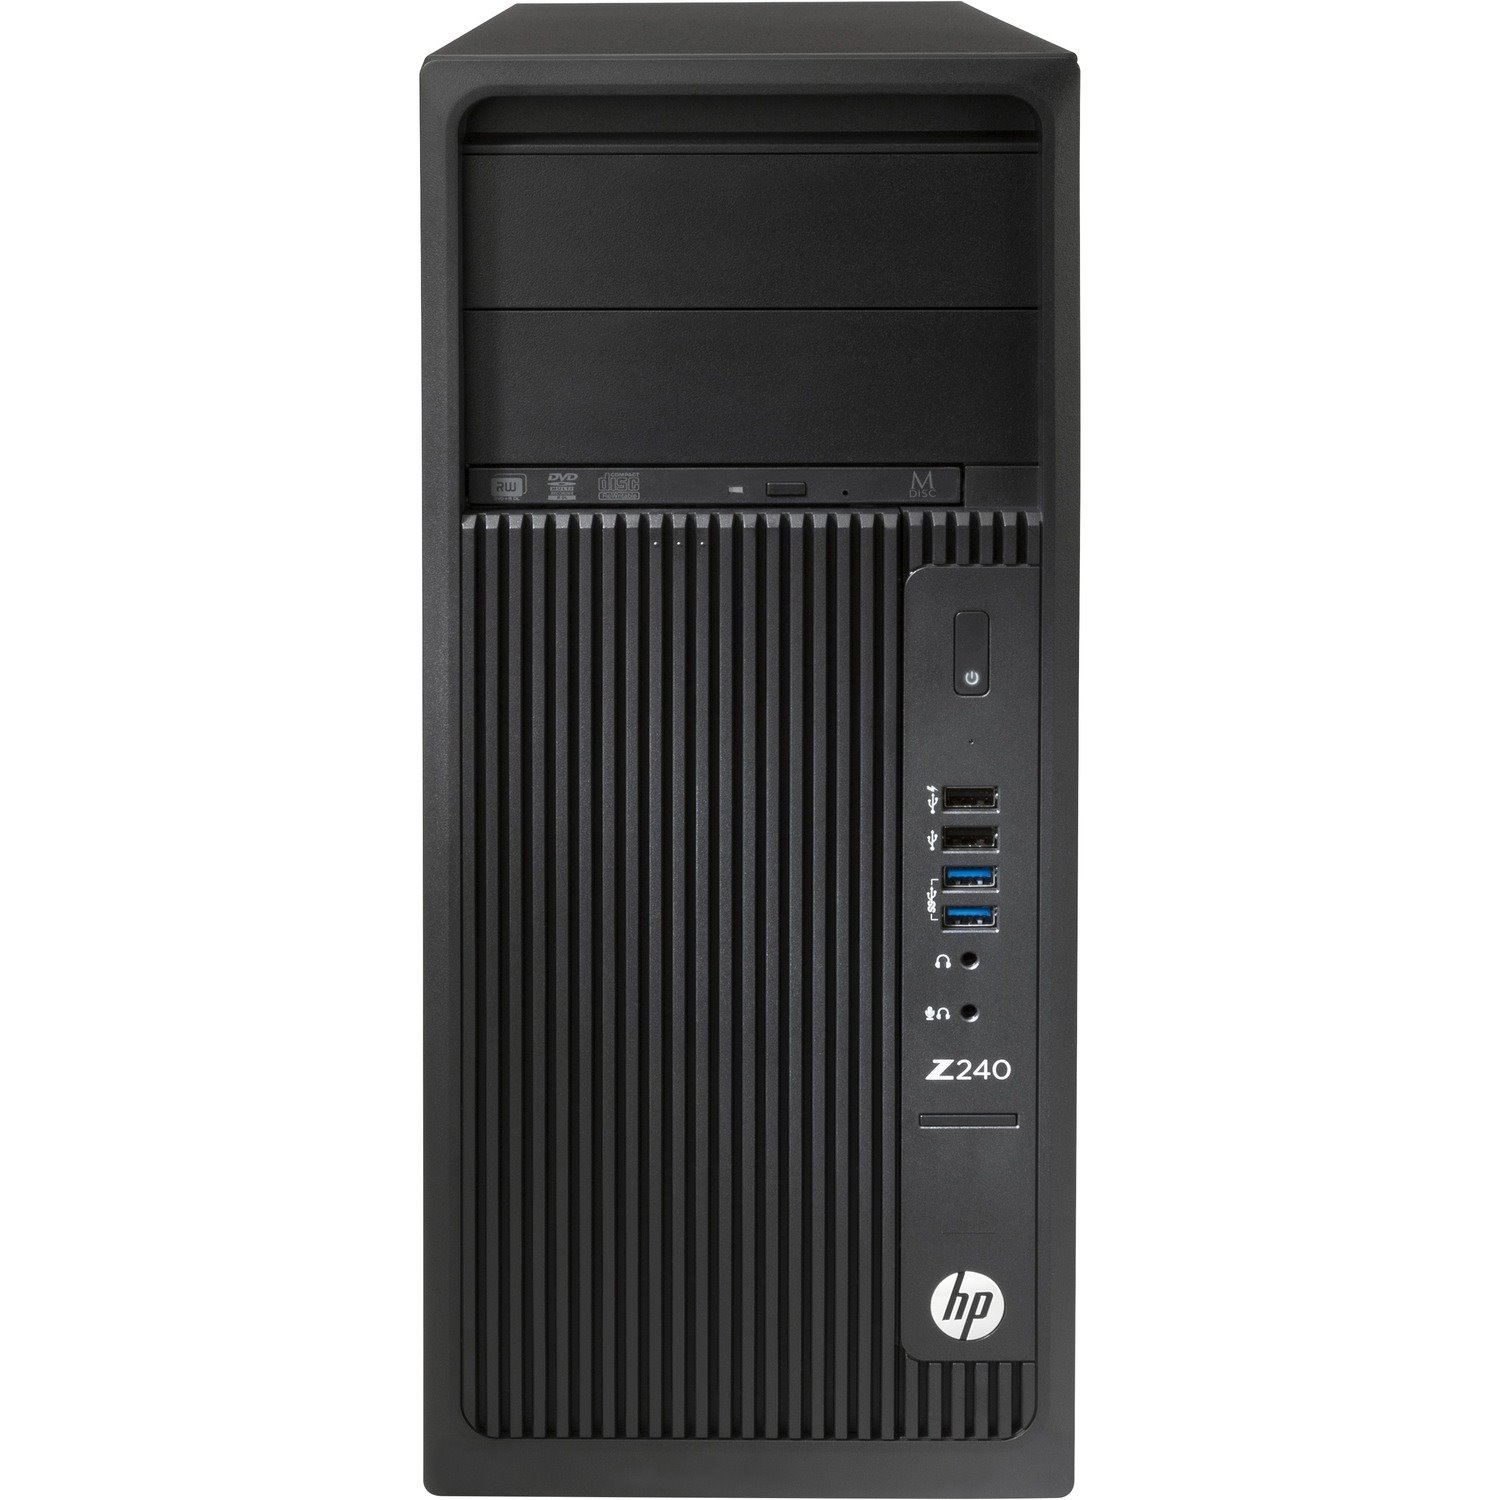 HP Z240 Workstation - 1 x Intel Core i5 Quad-core (4 Core) i5-6600 6th Gen 3.30 GHz - 8 GB DDR4 SDRAM RAM - 1 TB HDD - Mini-tower - Black